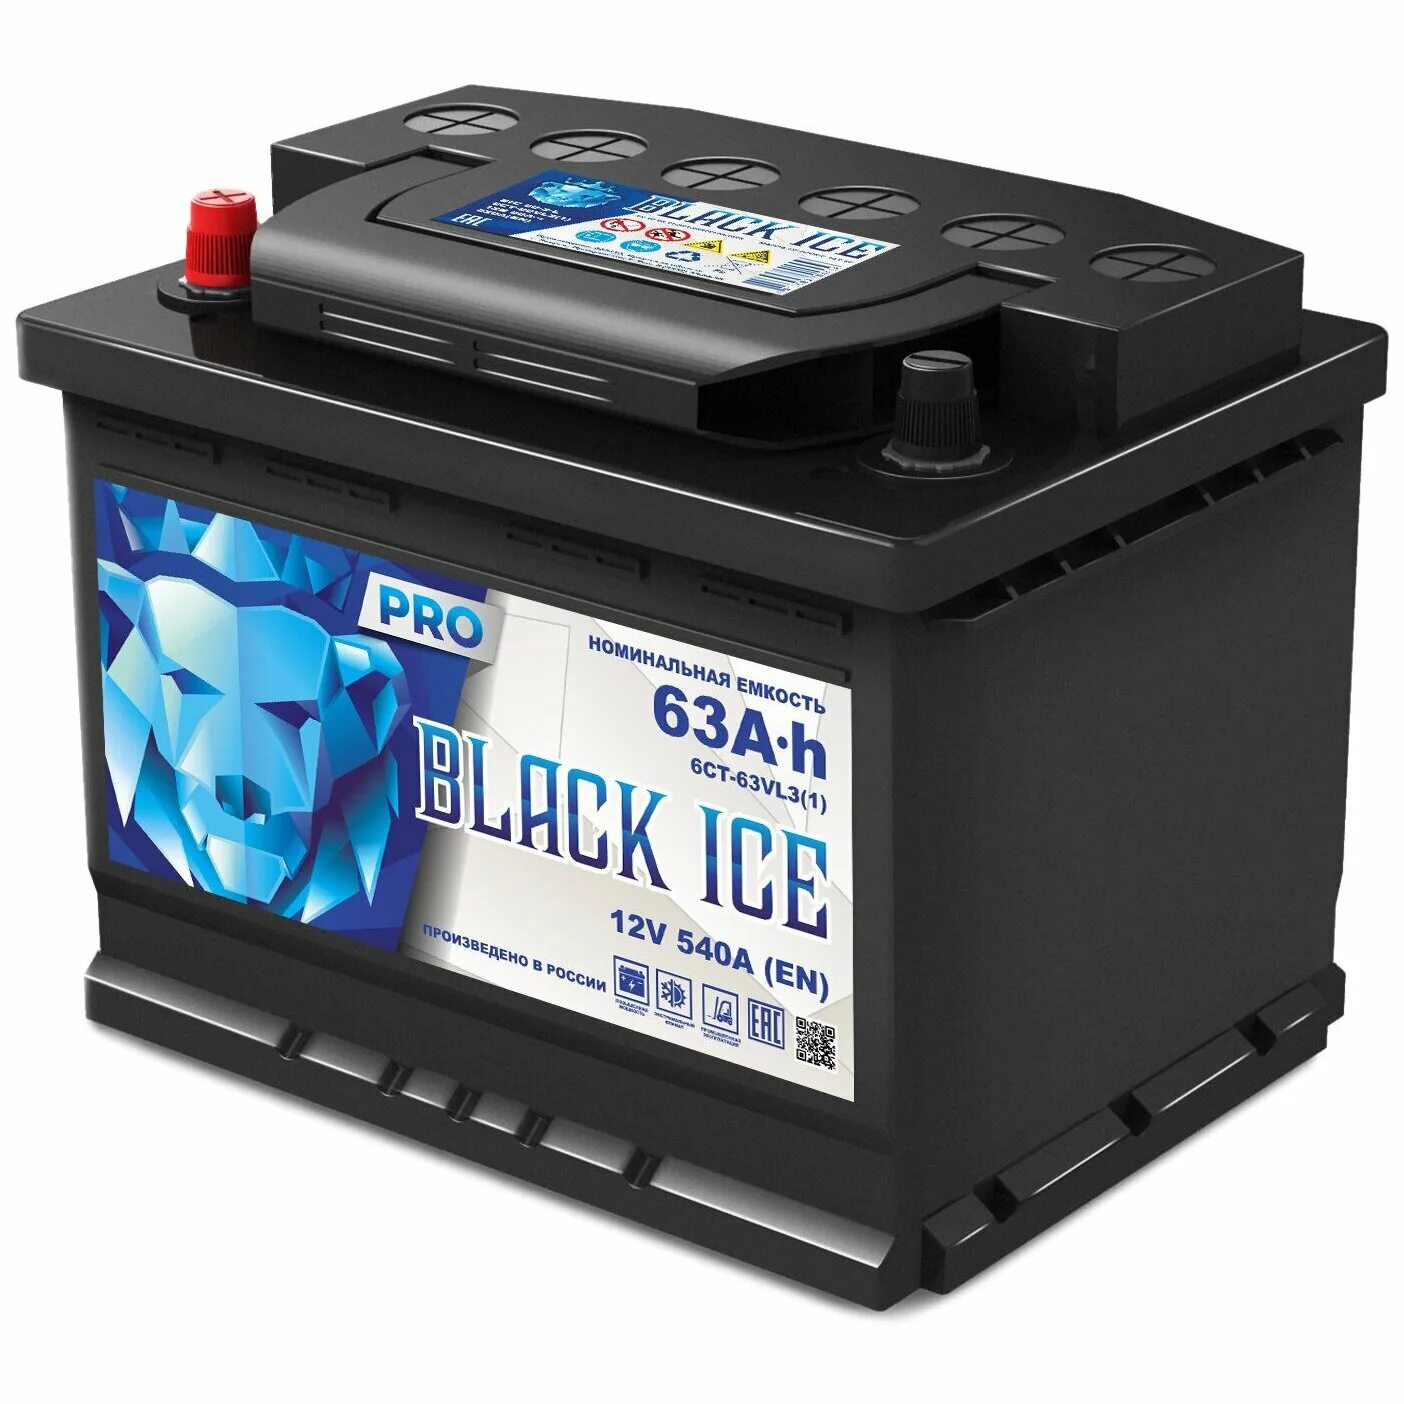 Автомобильный аккумулятор Black Ice Pro 6ст-63.1 VL. Аккумулятор Black Ice 6ст. Аккумулятор Black Ice 60. Black Ice 190 Ач аккумулятор.